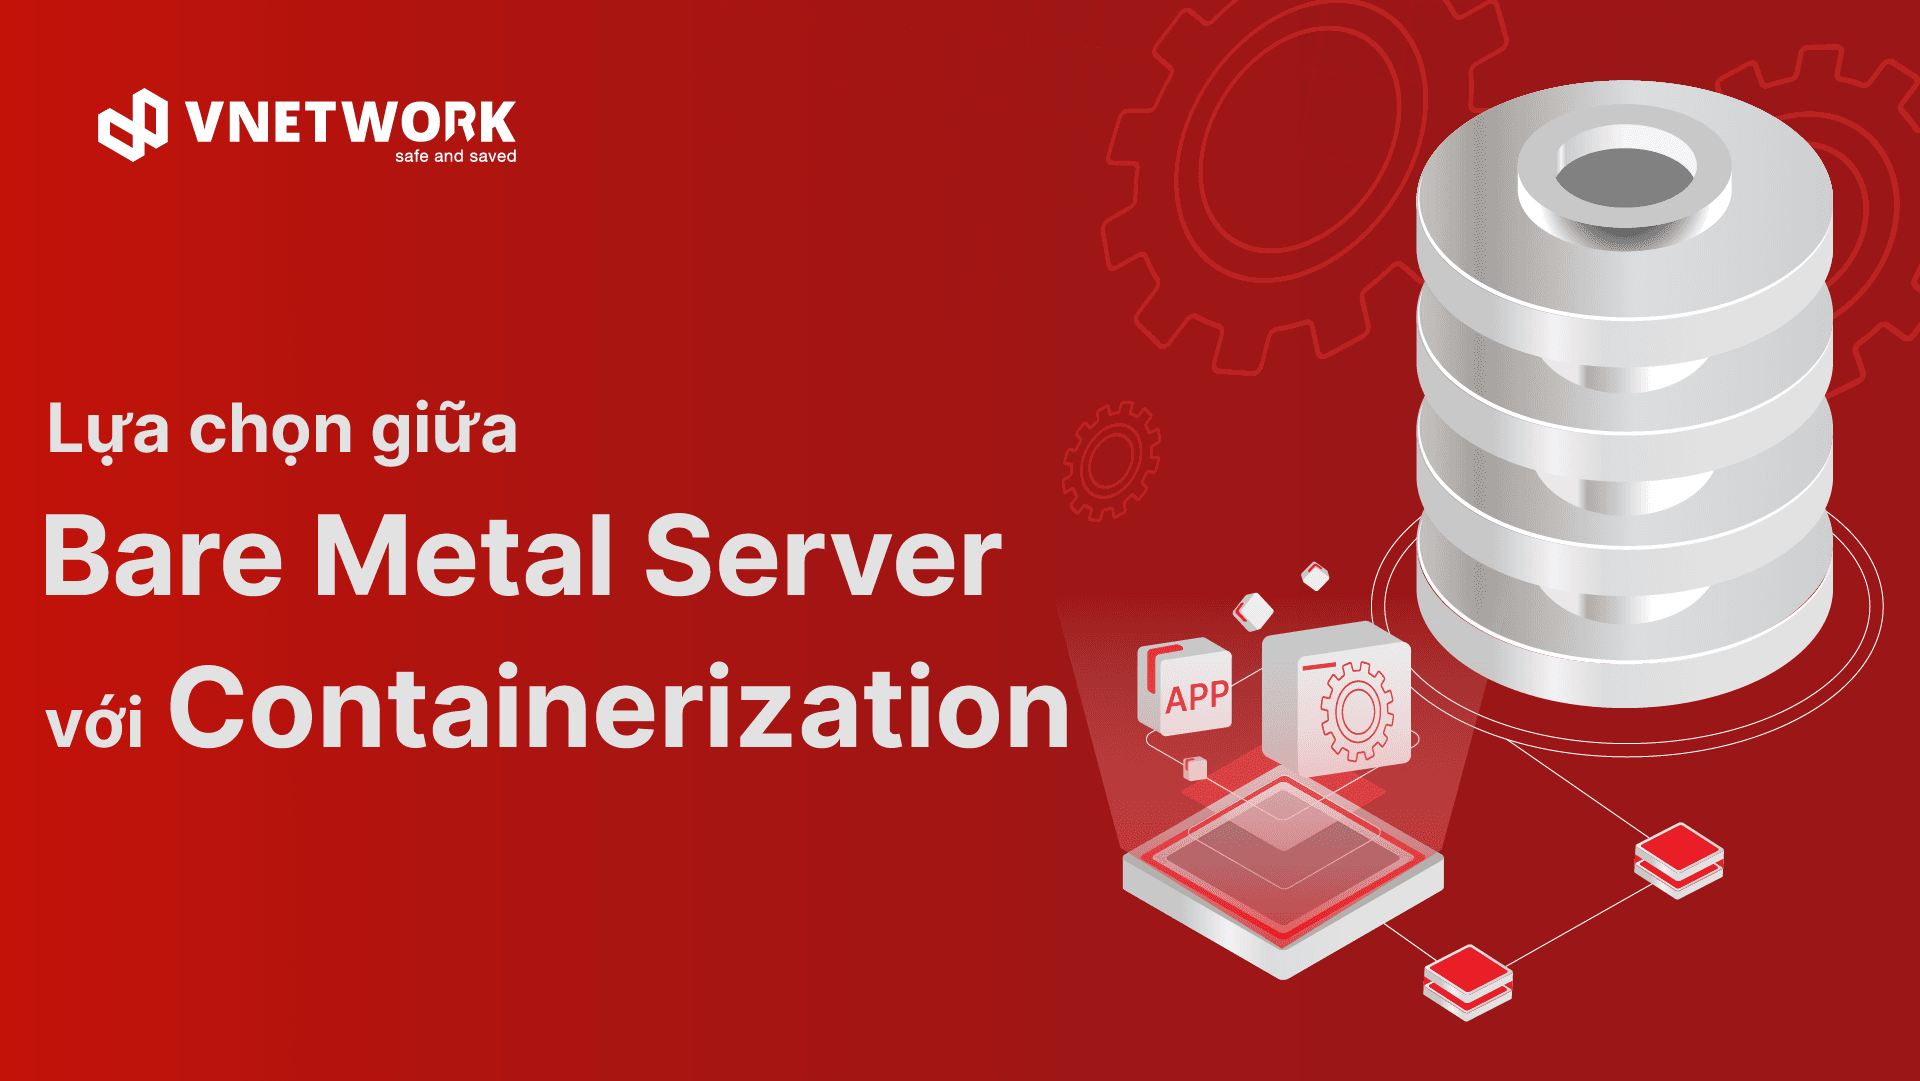 Sự khác nhau giữa Bare Metal Server và Containerization